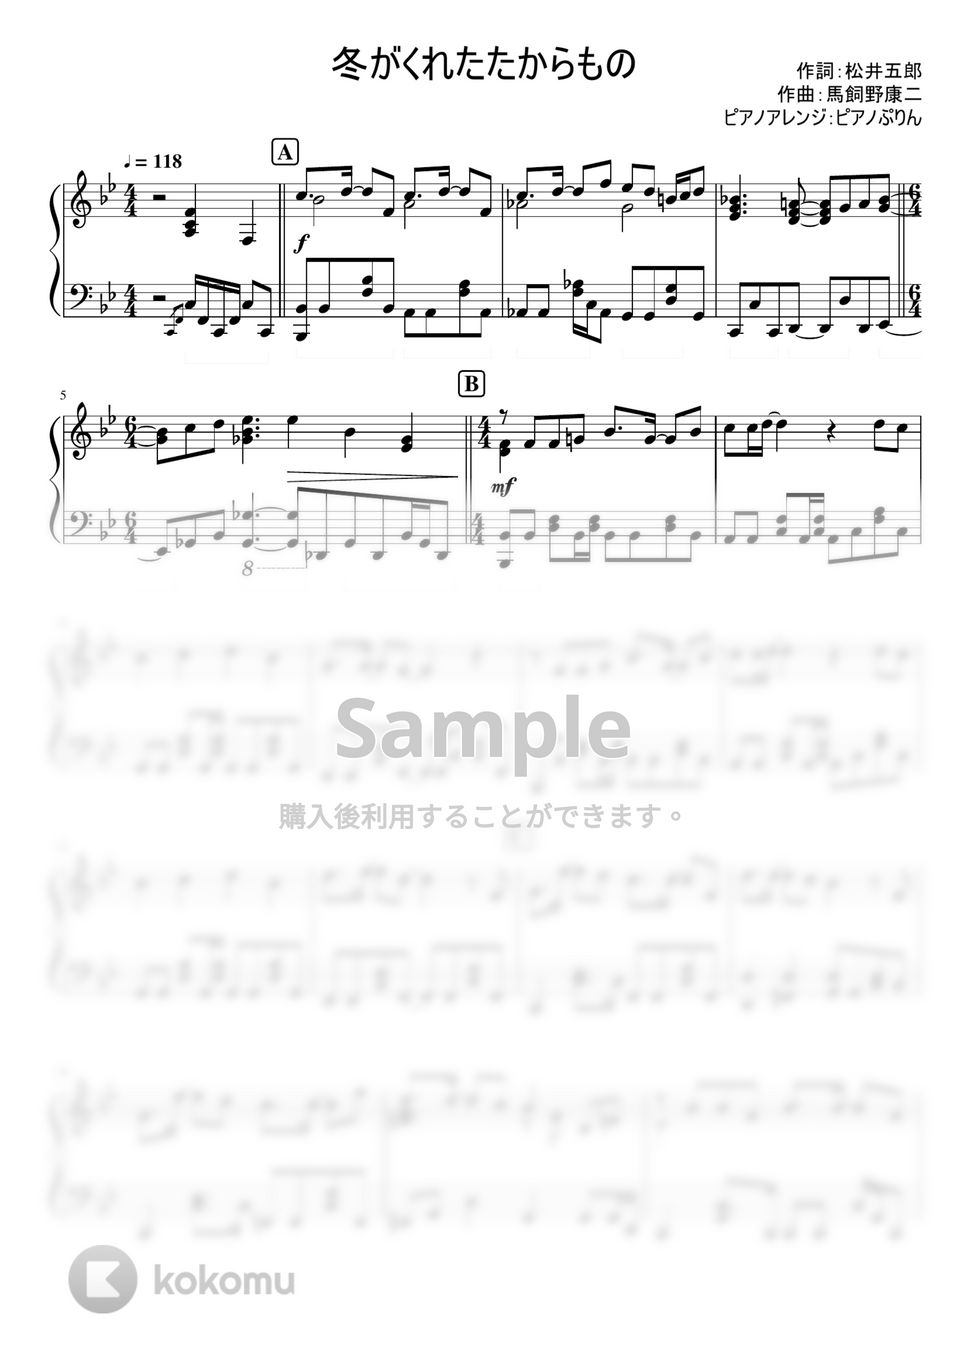 なにわ男子 - 冬がくれたたからもの ((なにわ男子/ 3rd single『ハッピーサプライズ』カップリング曲) by ピアノぷりん